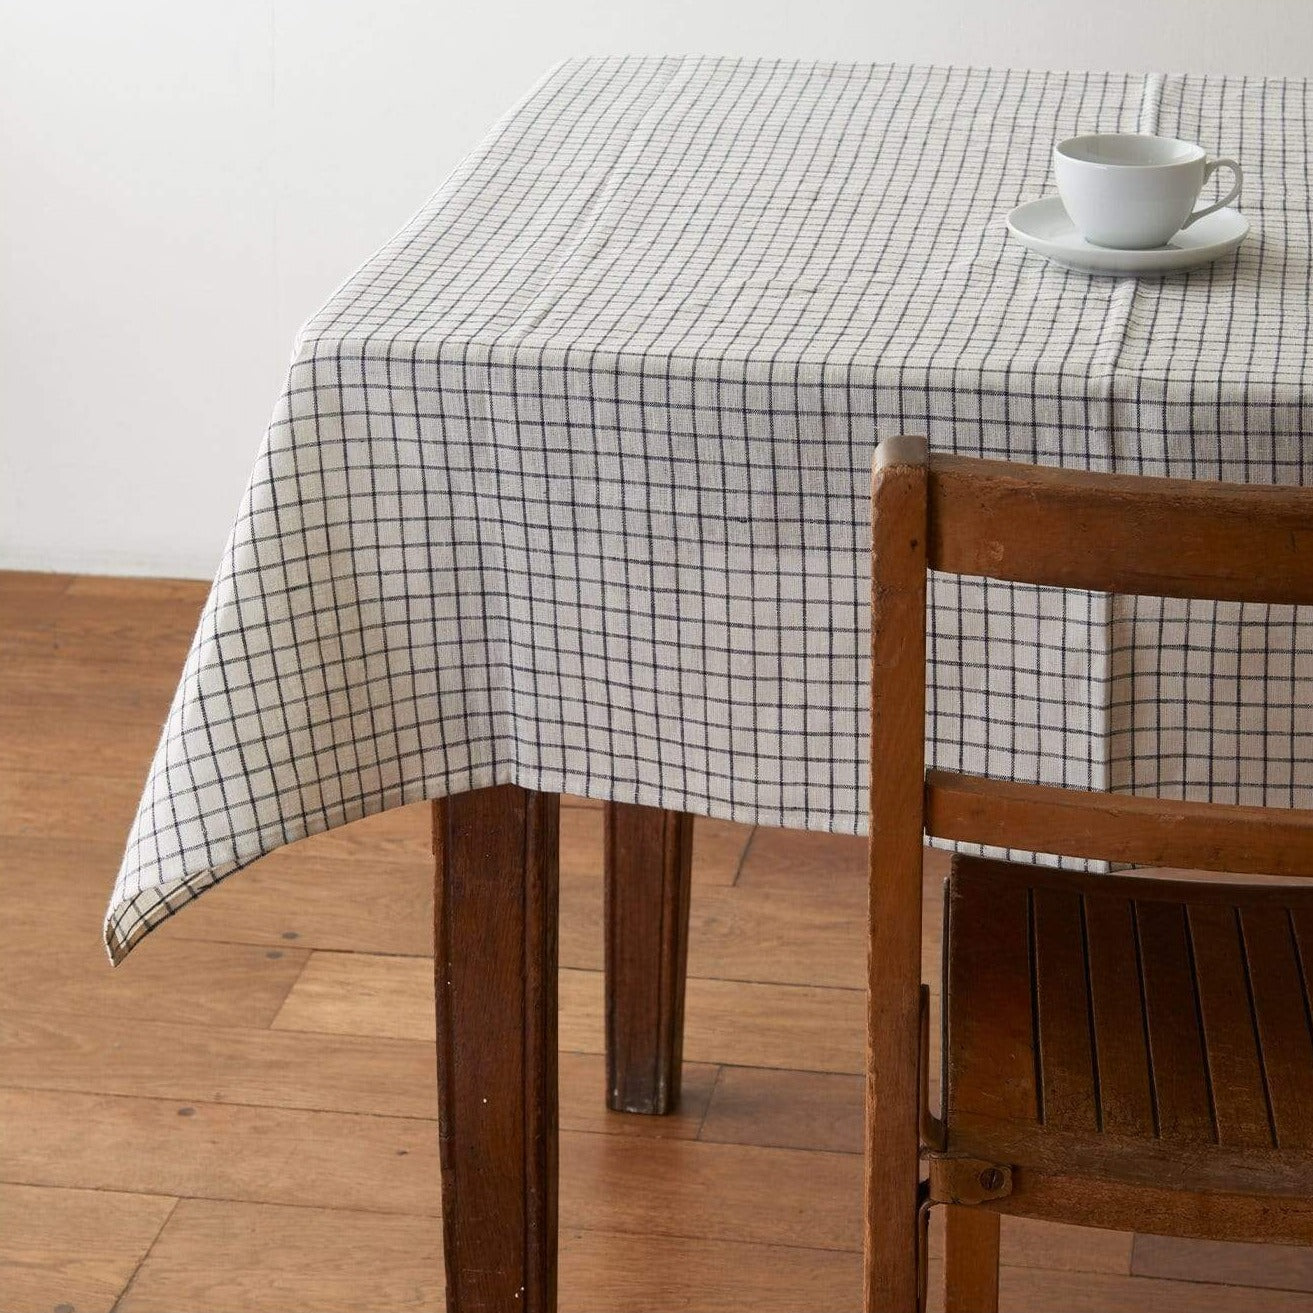 Fog Linen Work Table Cloth - Cream + Black Fine Check